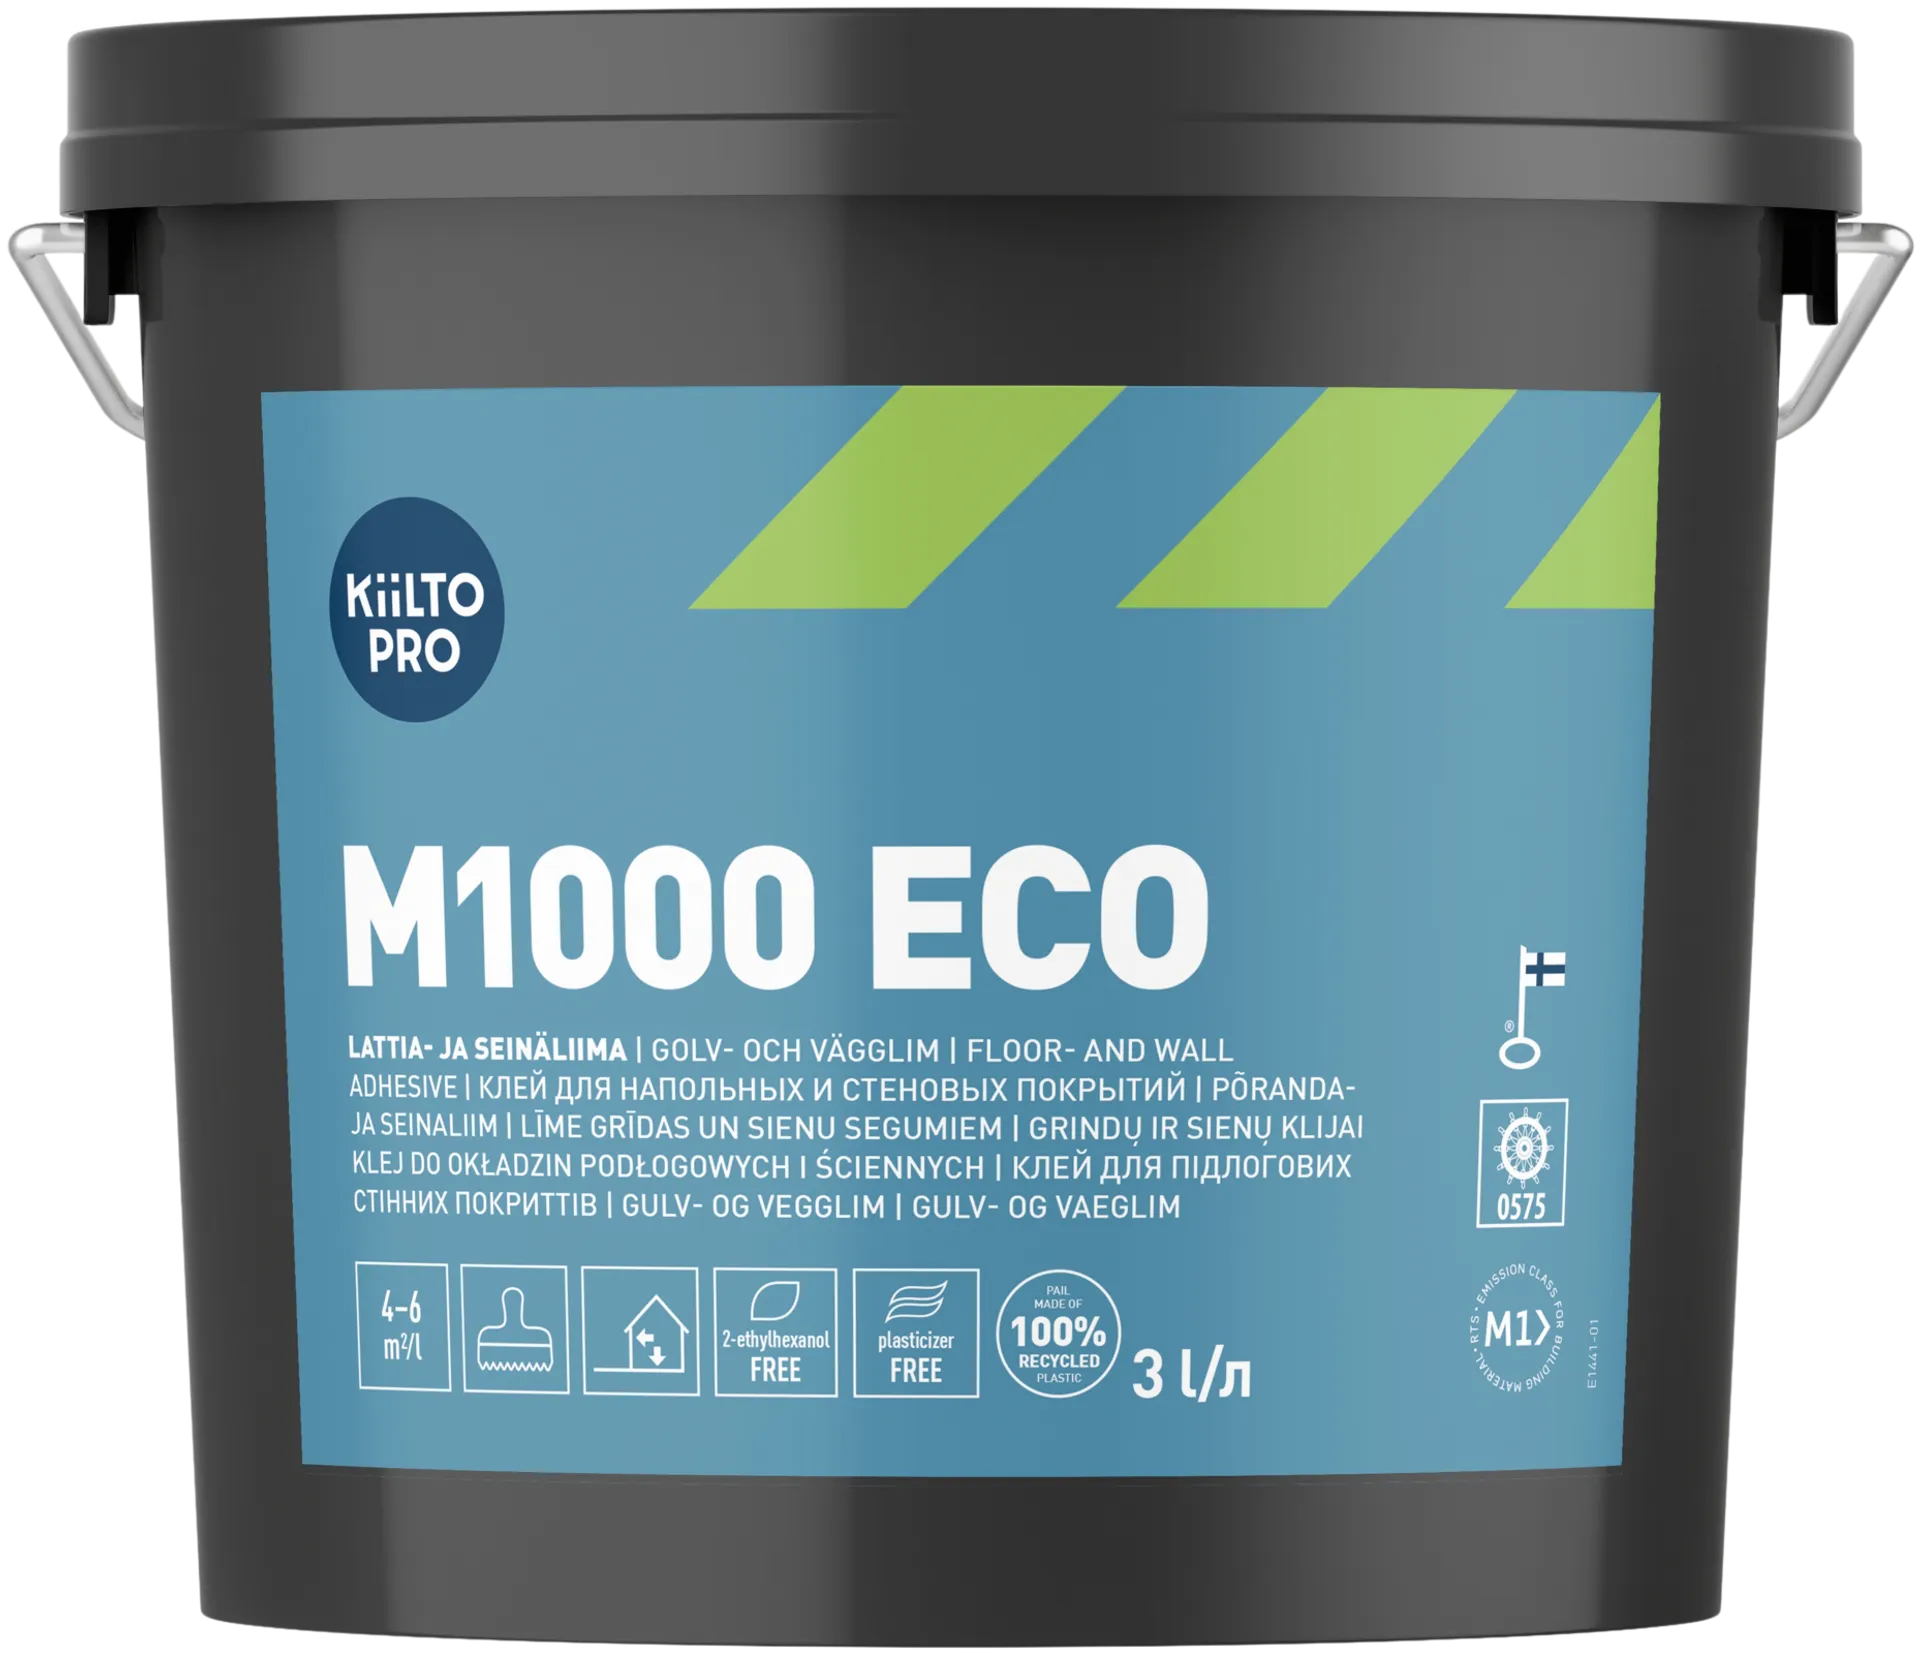 Kiilto Pro lattia- ja seinäliima M1000 Eco 3l